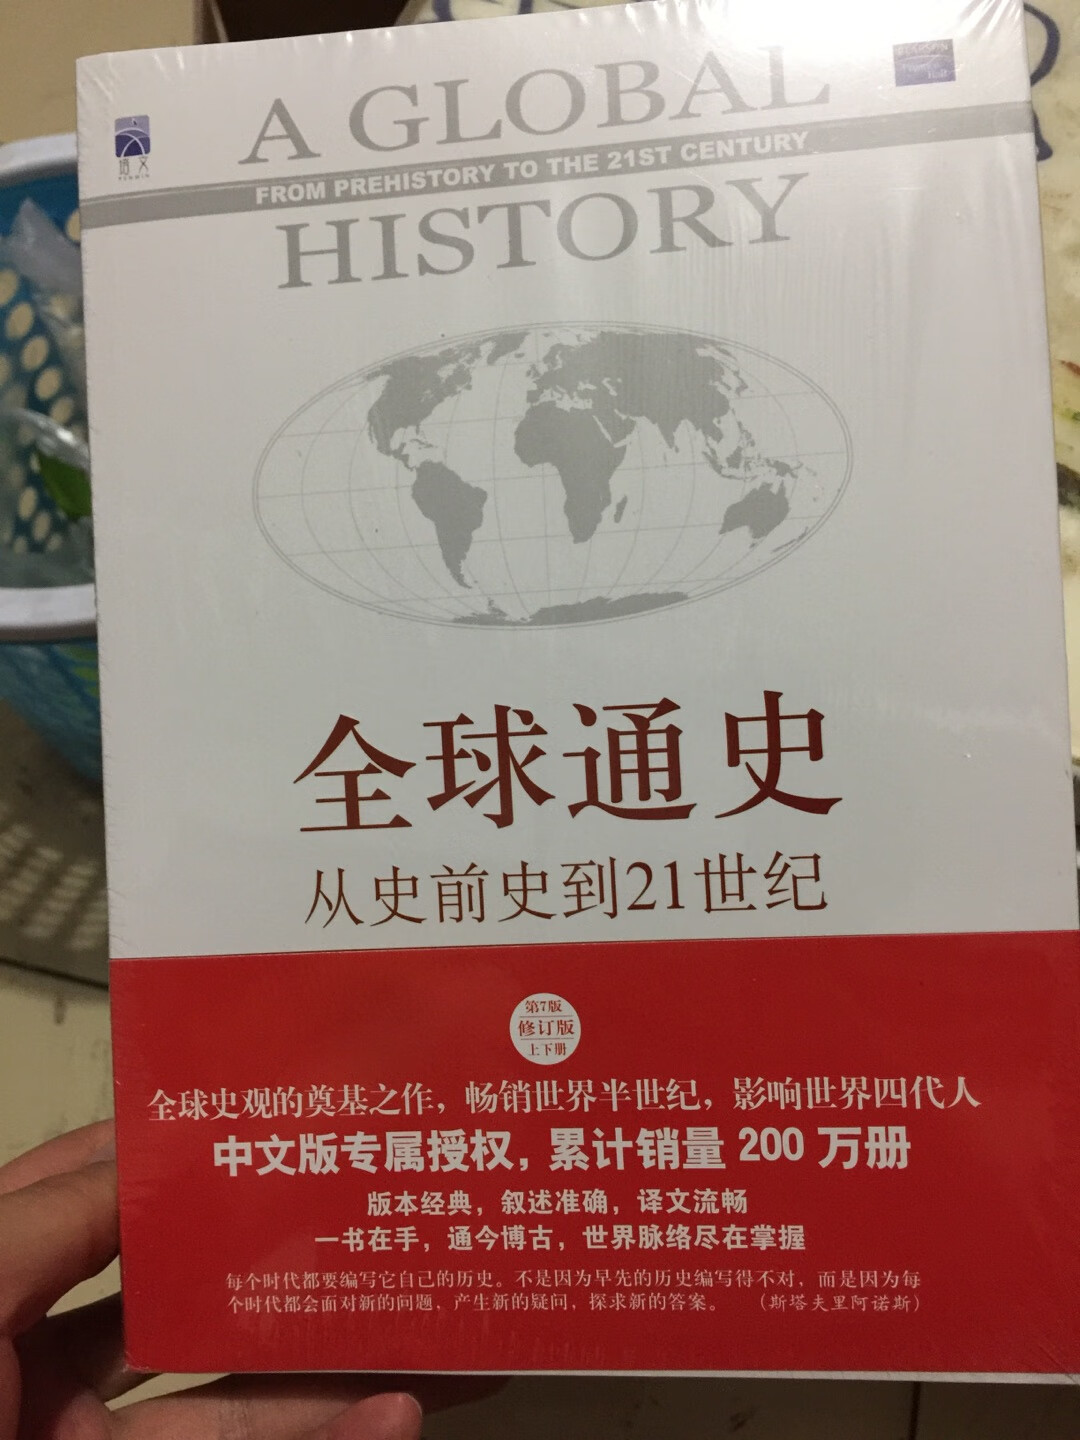 全球史观大成之作，值得读的全球史书籍之一，当然中国部分可以忽视，偏见，道理大家都懂得